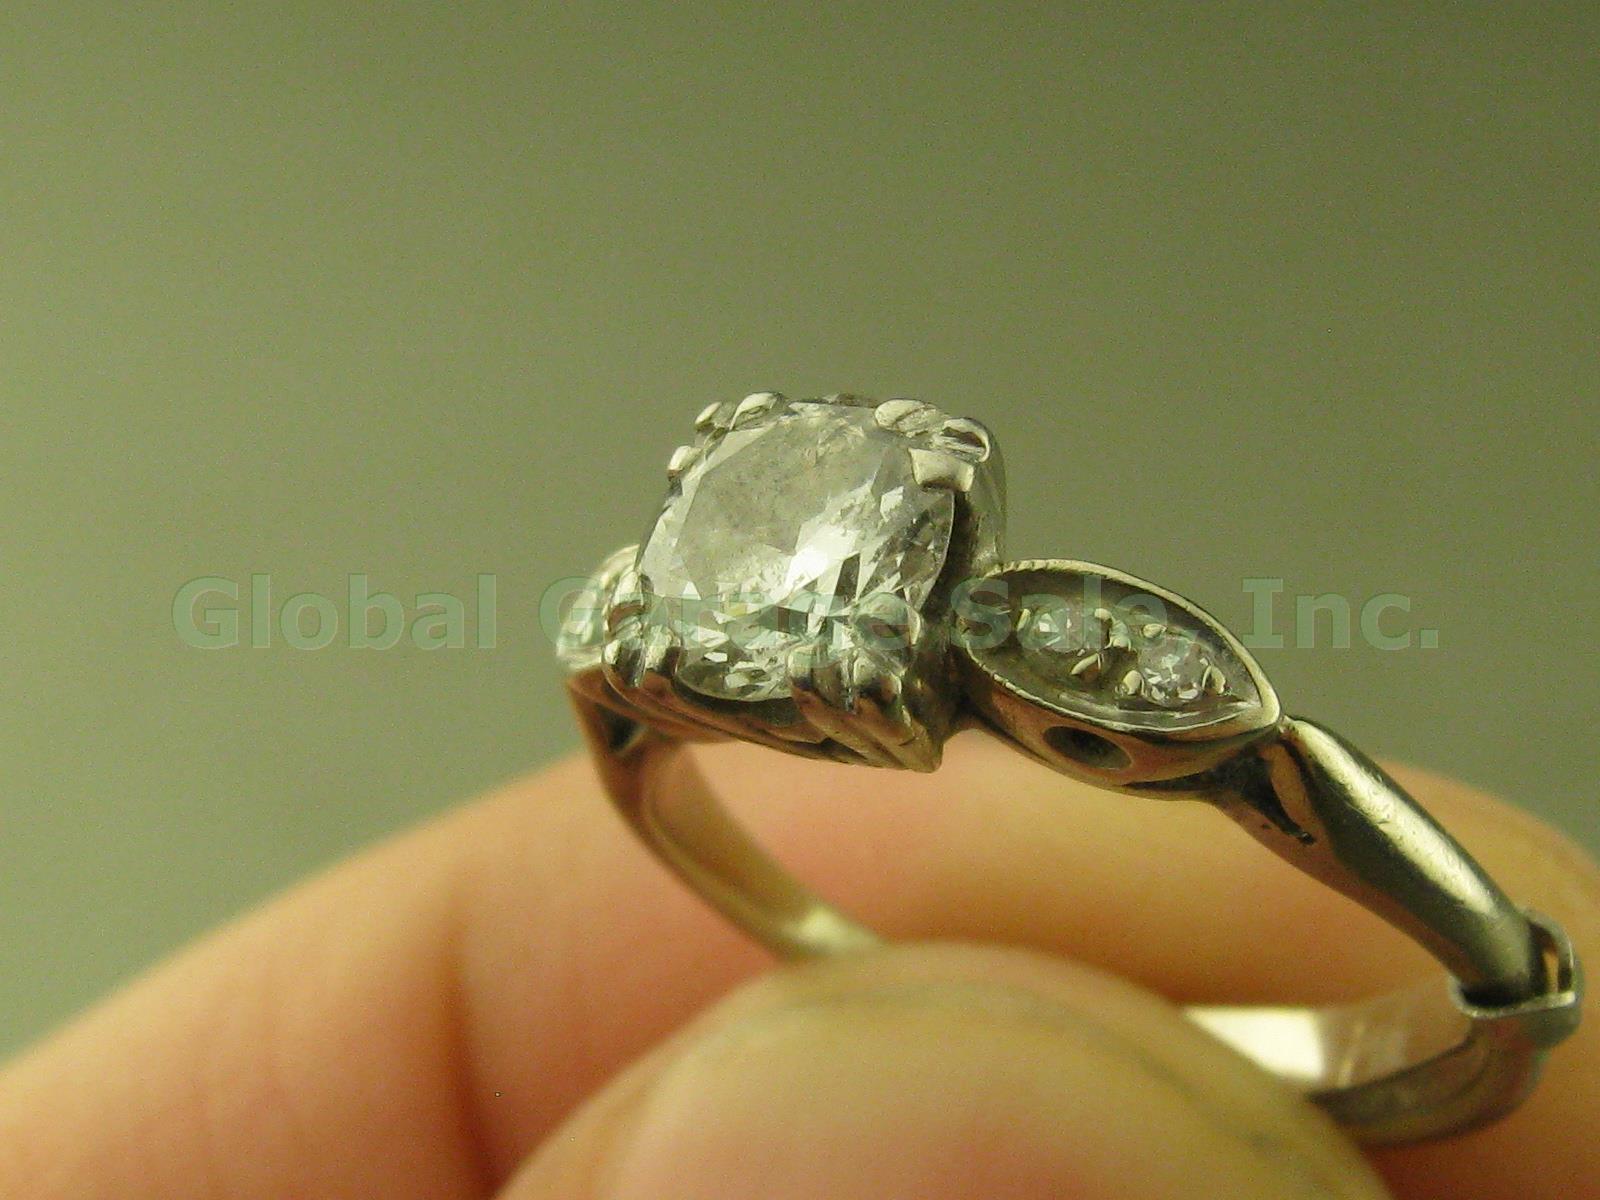 Vtg Byard F Brogan 5-Stone Diamond Engagement Ring Palladium 4.25-4.75 2.3g NR! 1